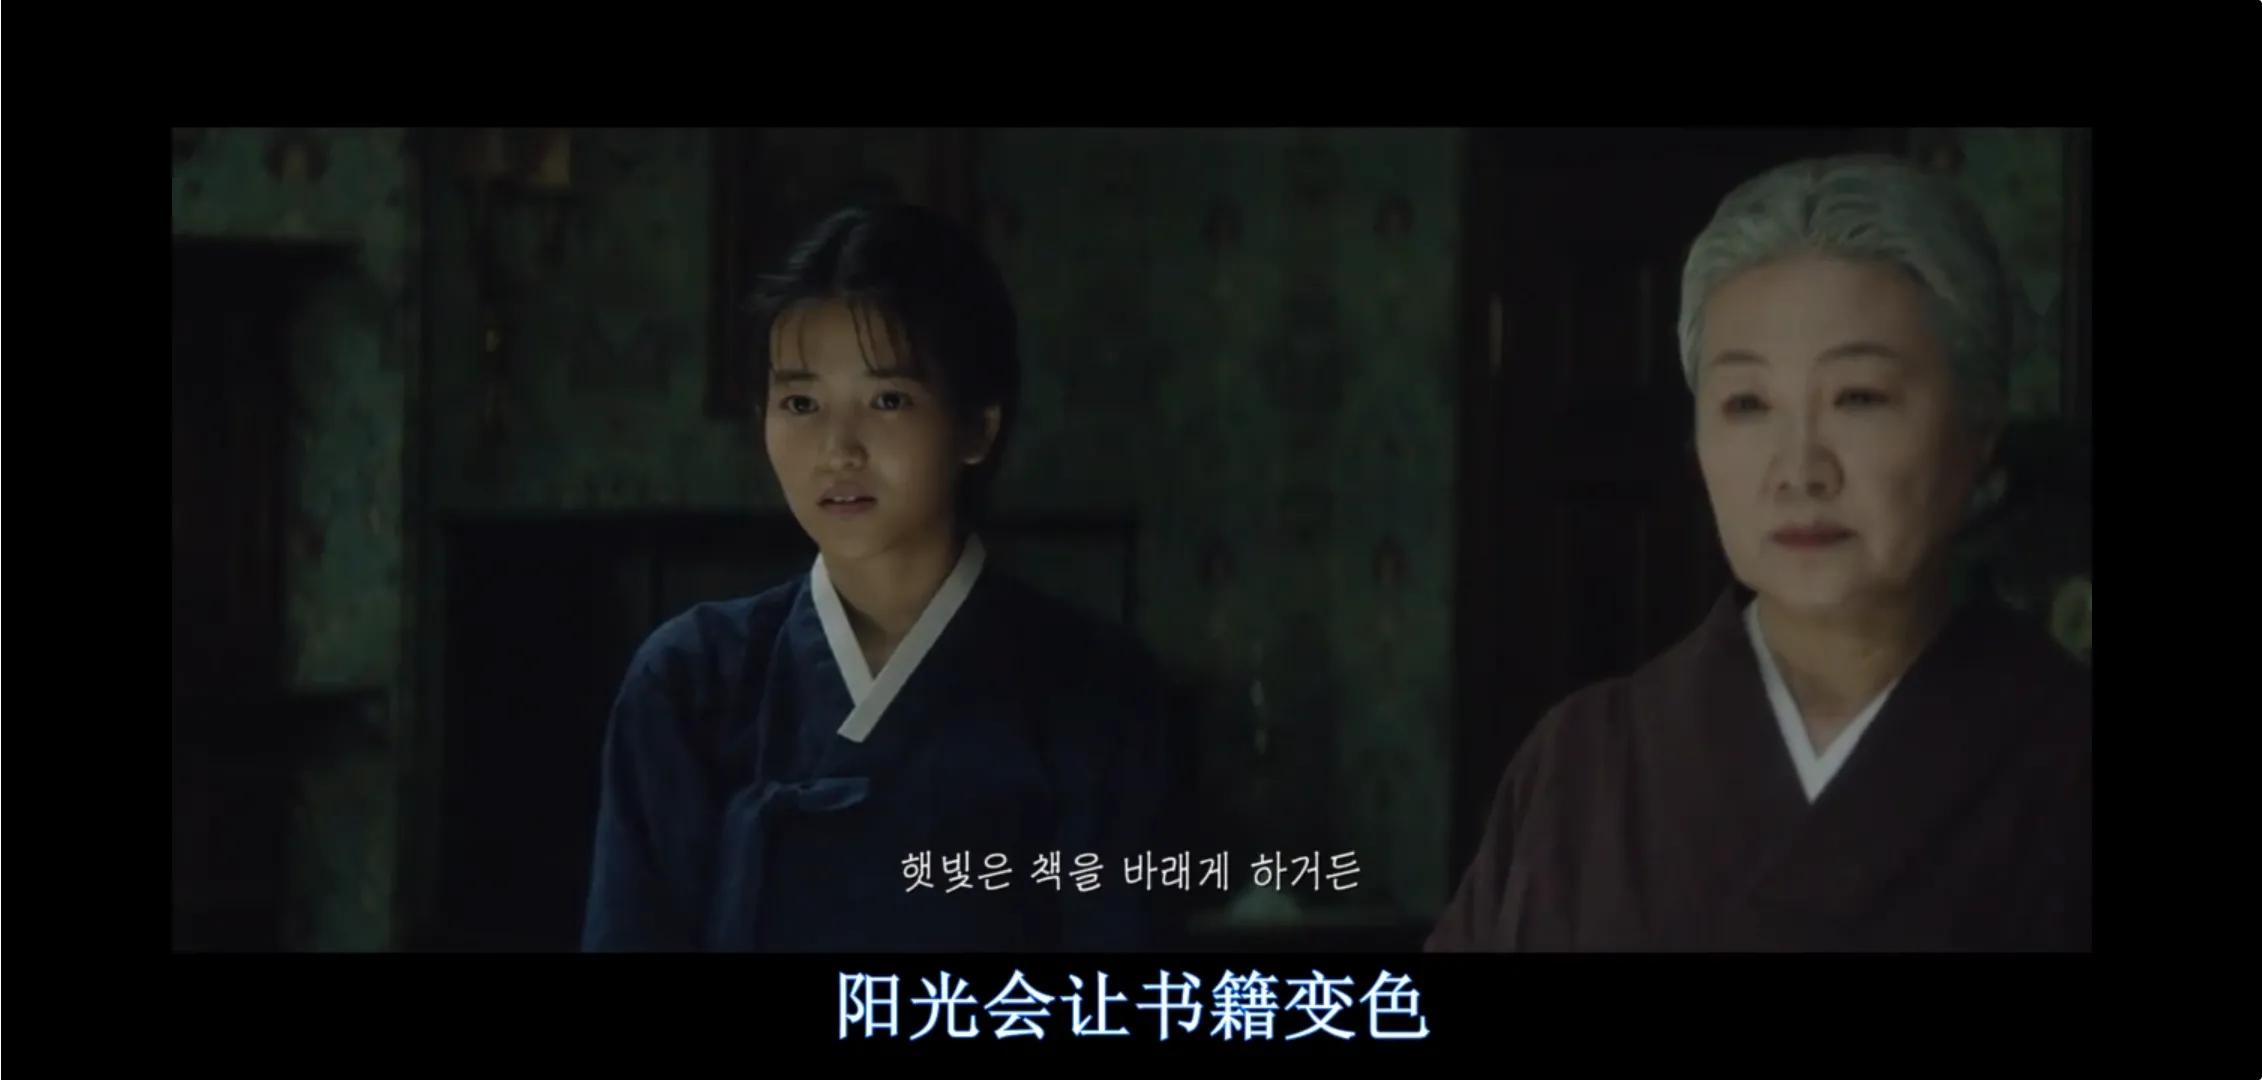 韩国电影《小姐》:高端的猎手往往以猎物的姿态出现